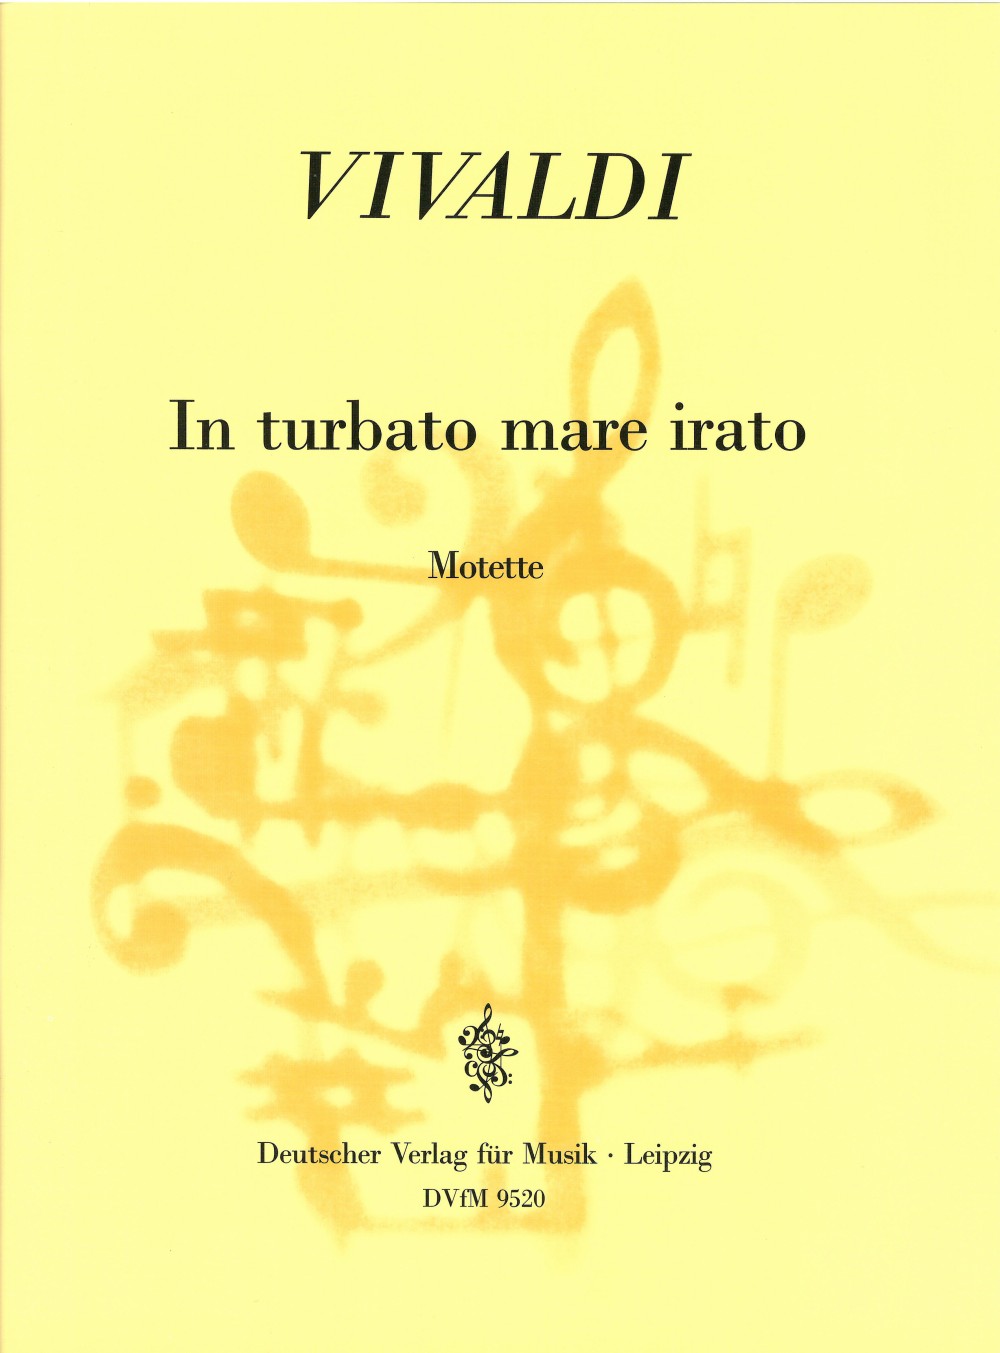 Vivaldi: In turbato mare irato